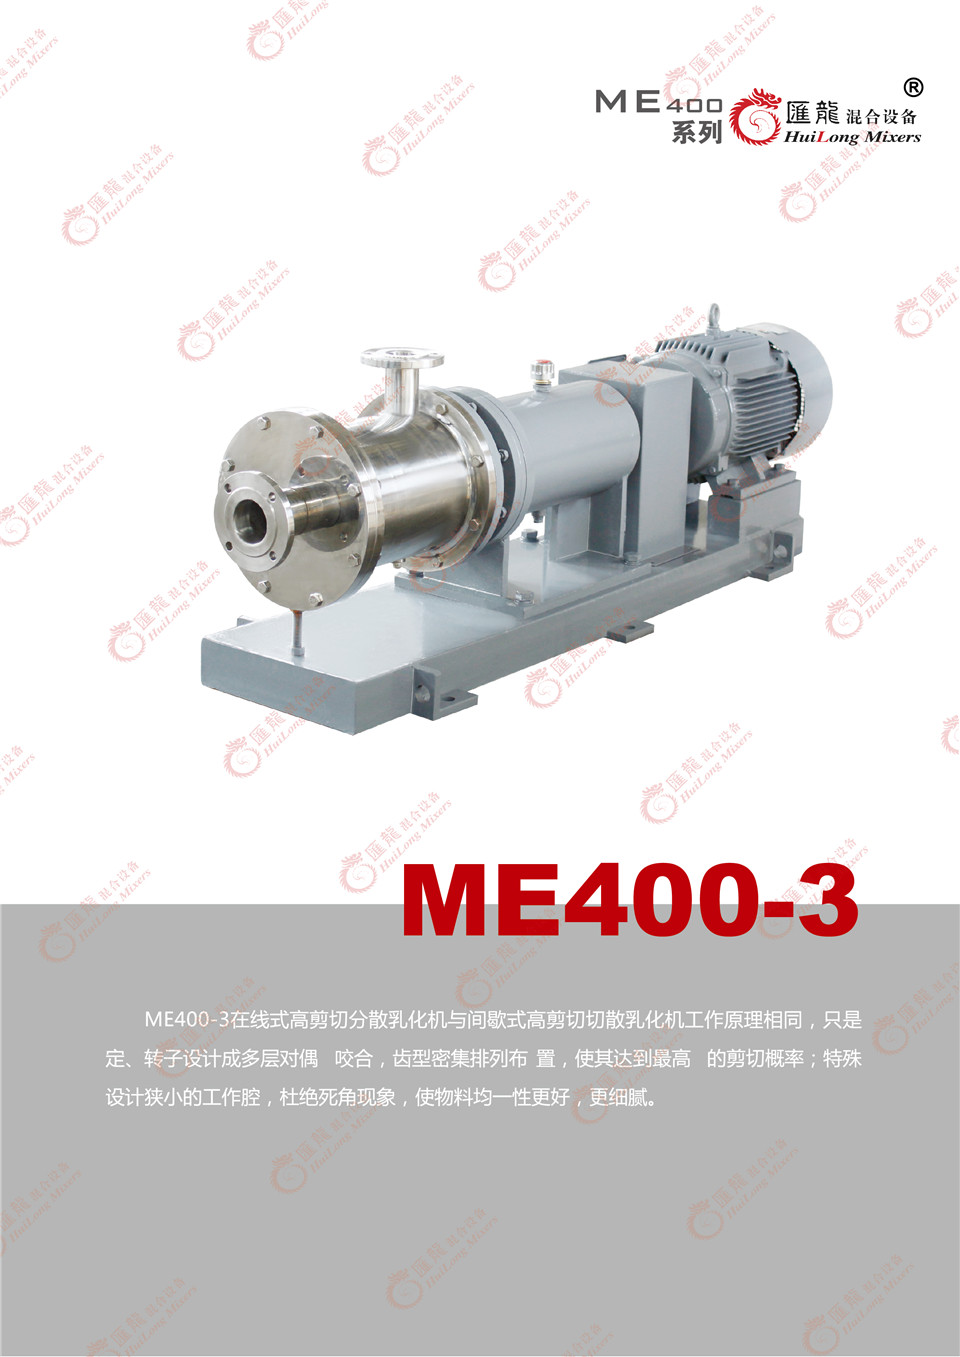 “ME400-3型乳化机”